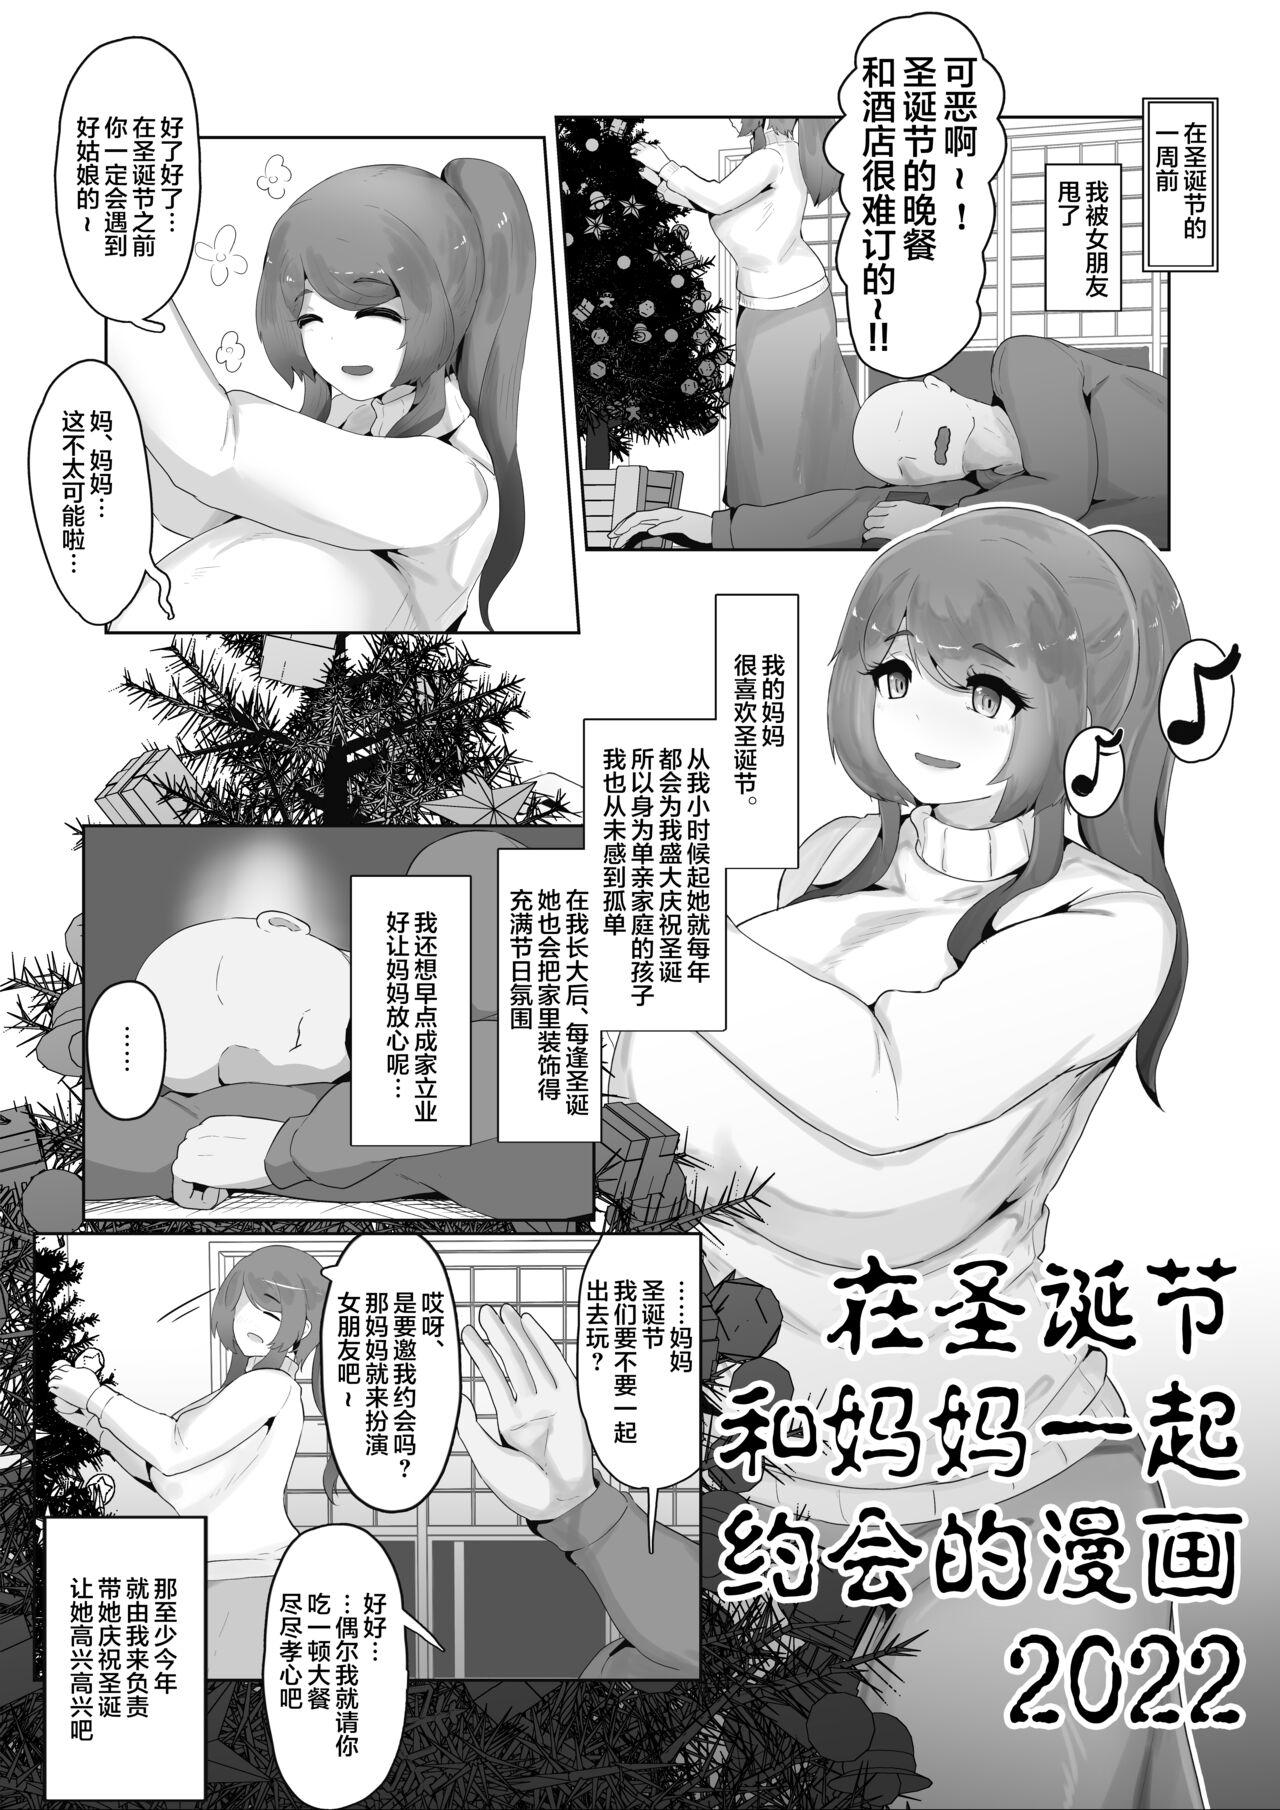 Christmas Boshi Kan 2022 0